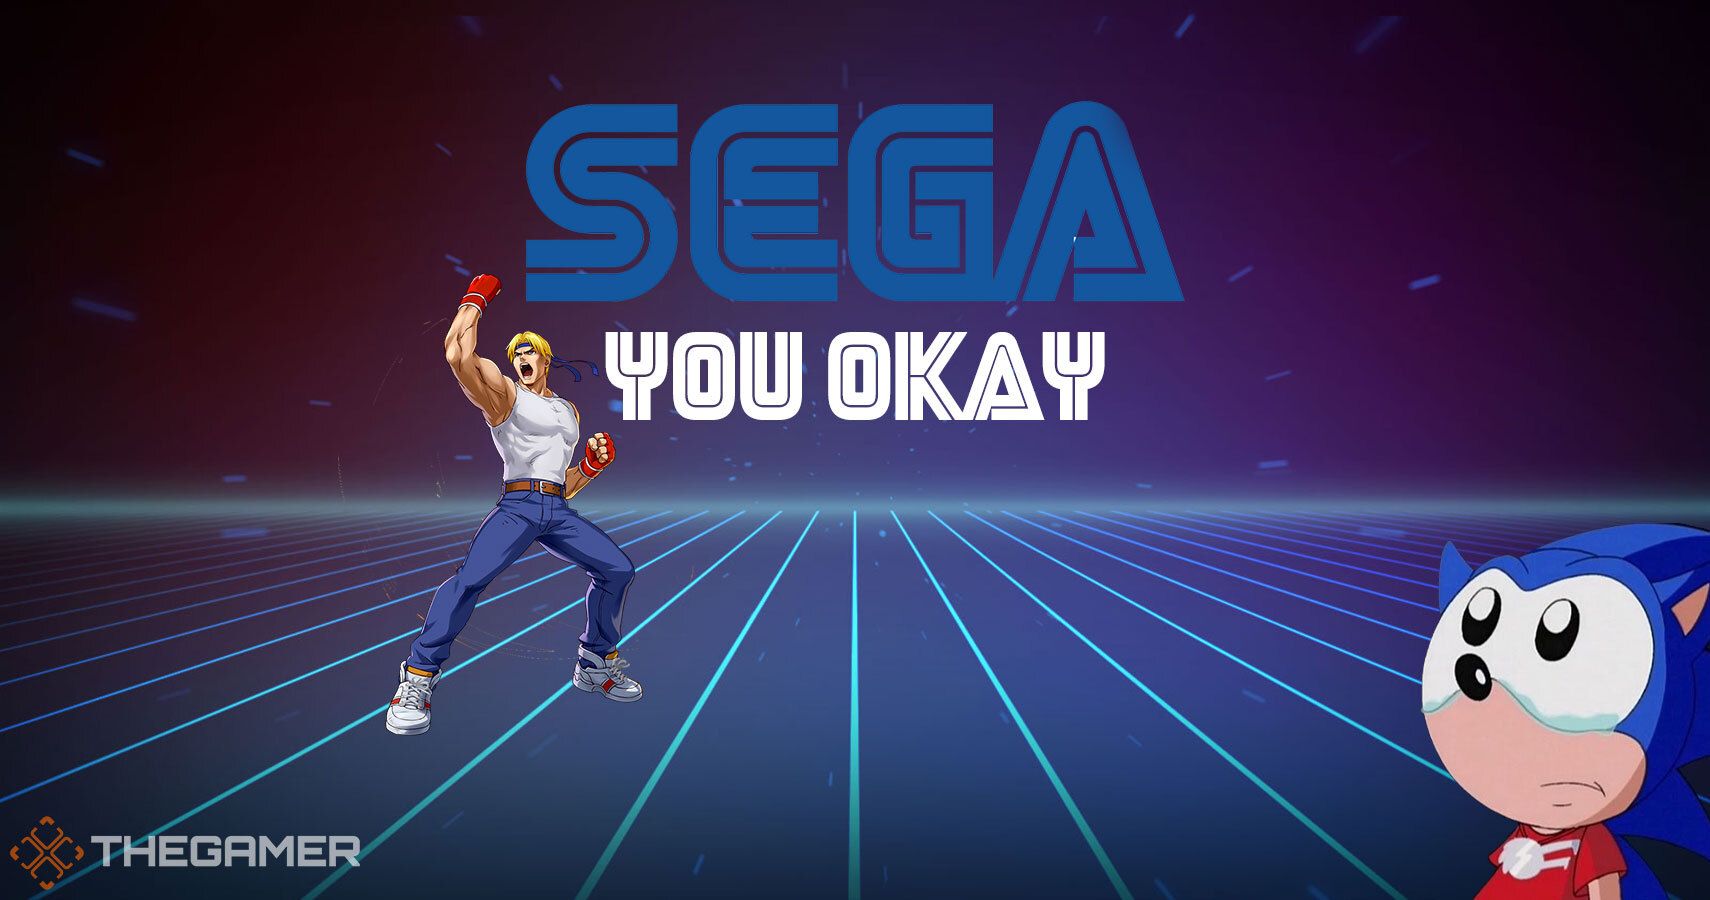 Sega You Okay